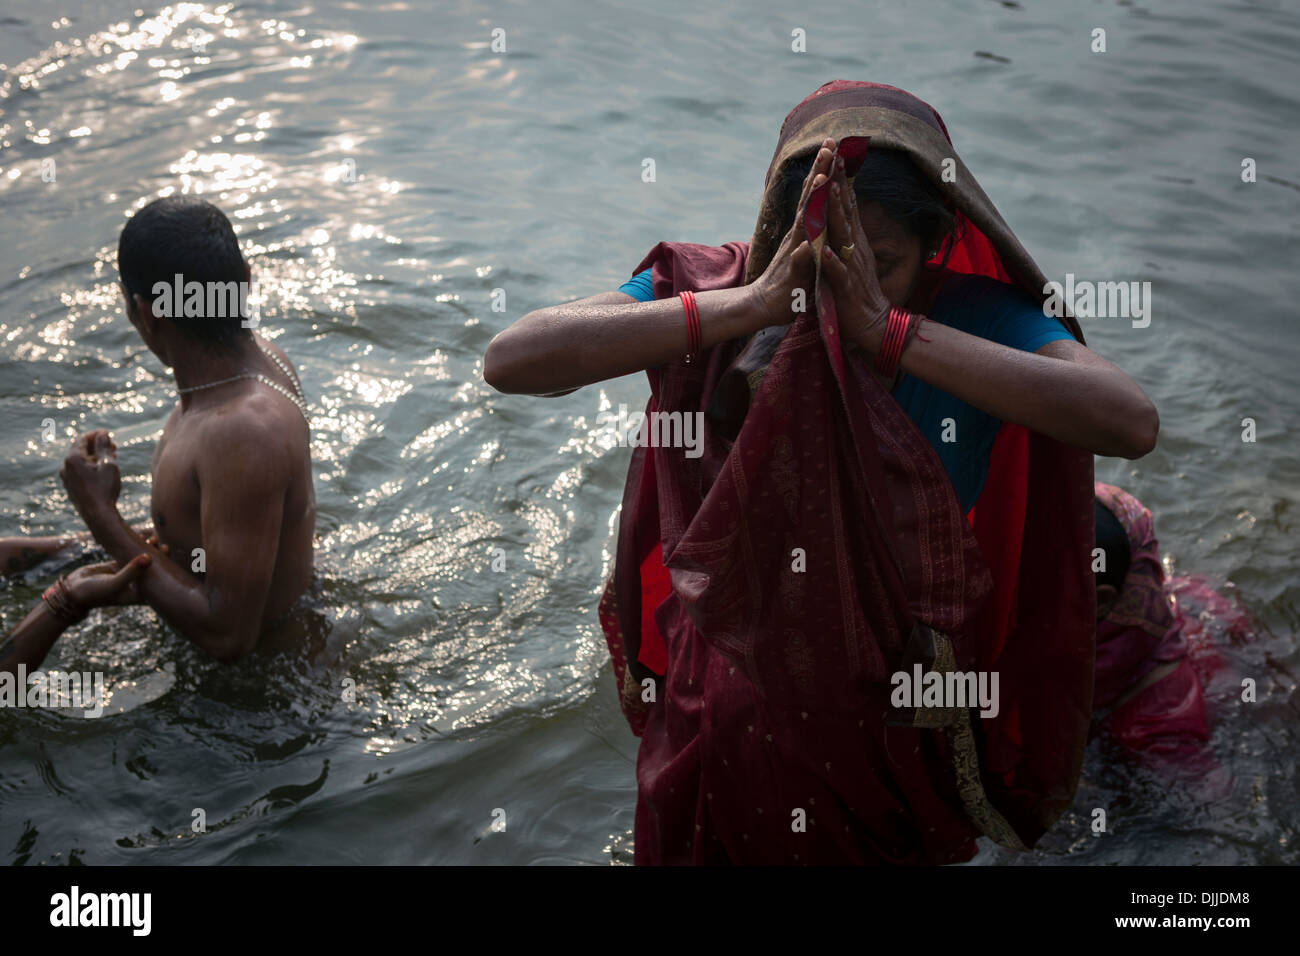 Les croyants hindous prier à l'aube submergé dans les eaux du Gange, un fleuve sacré dans la religion hindoue. Banque D'Images